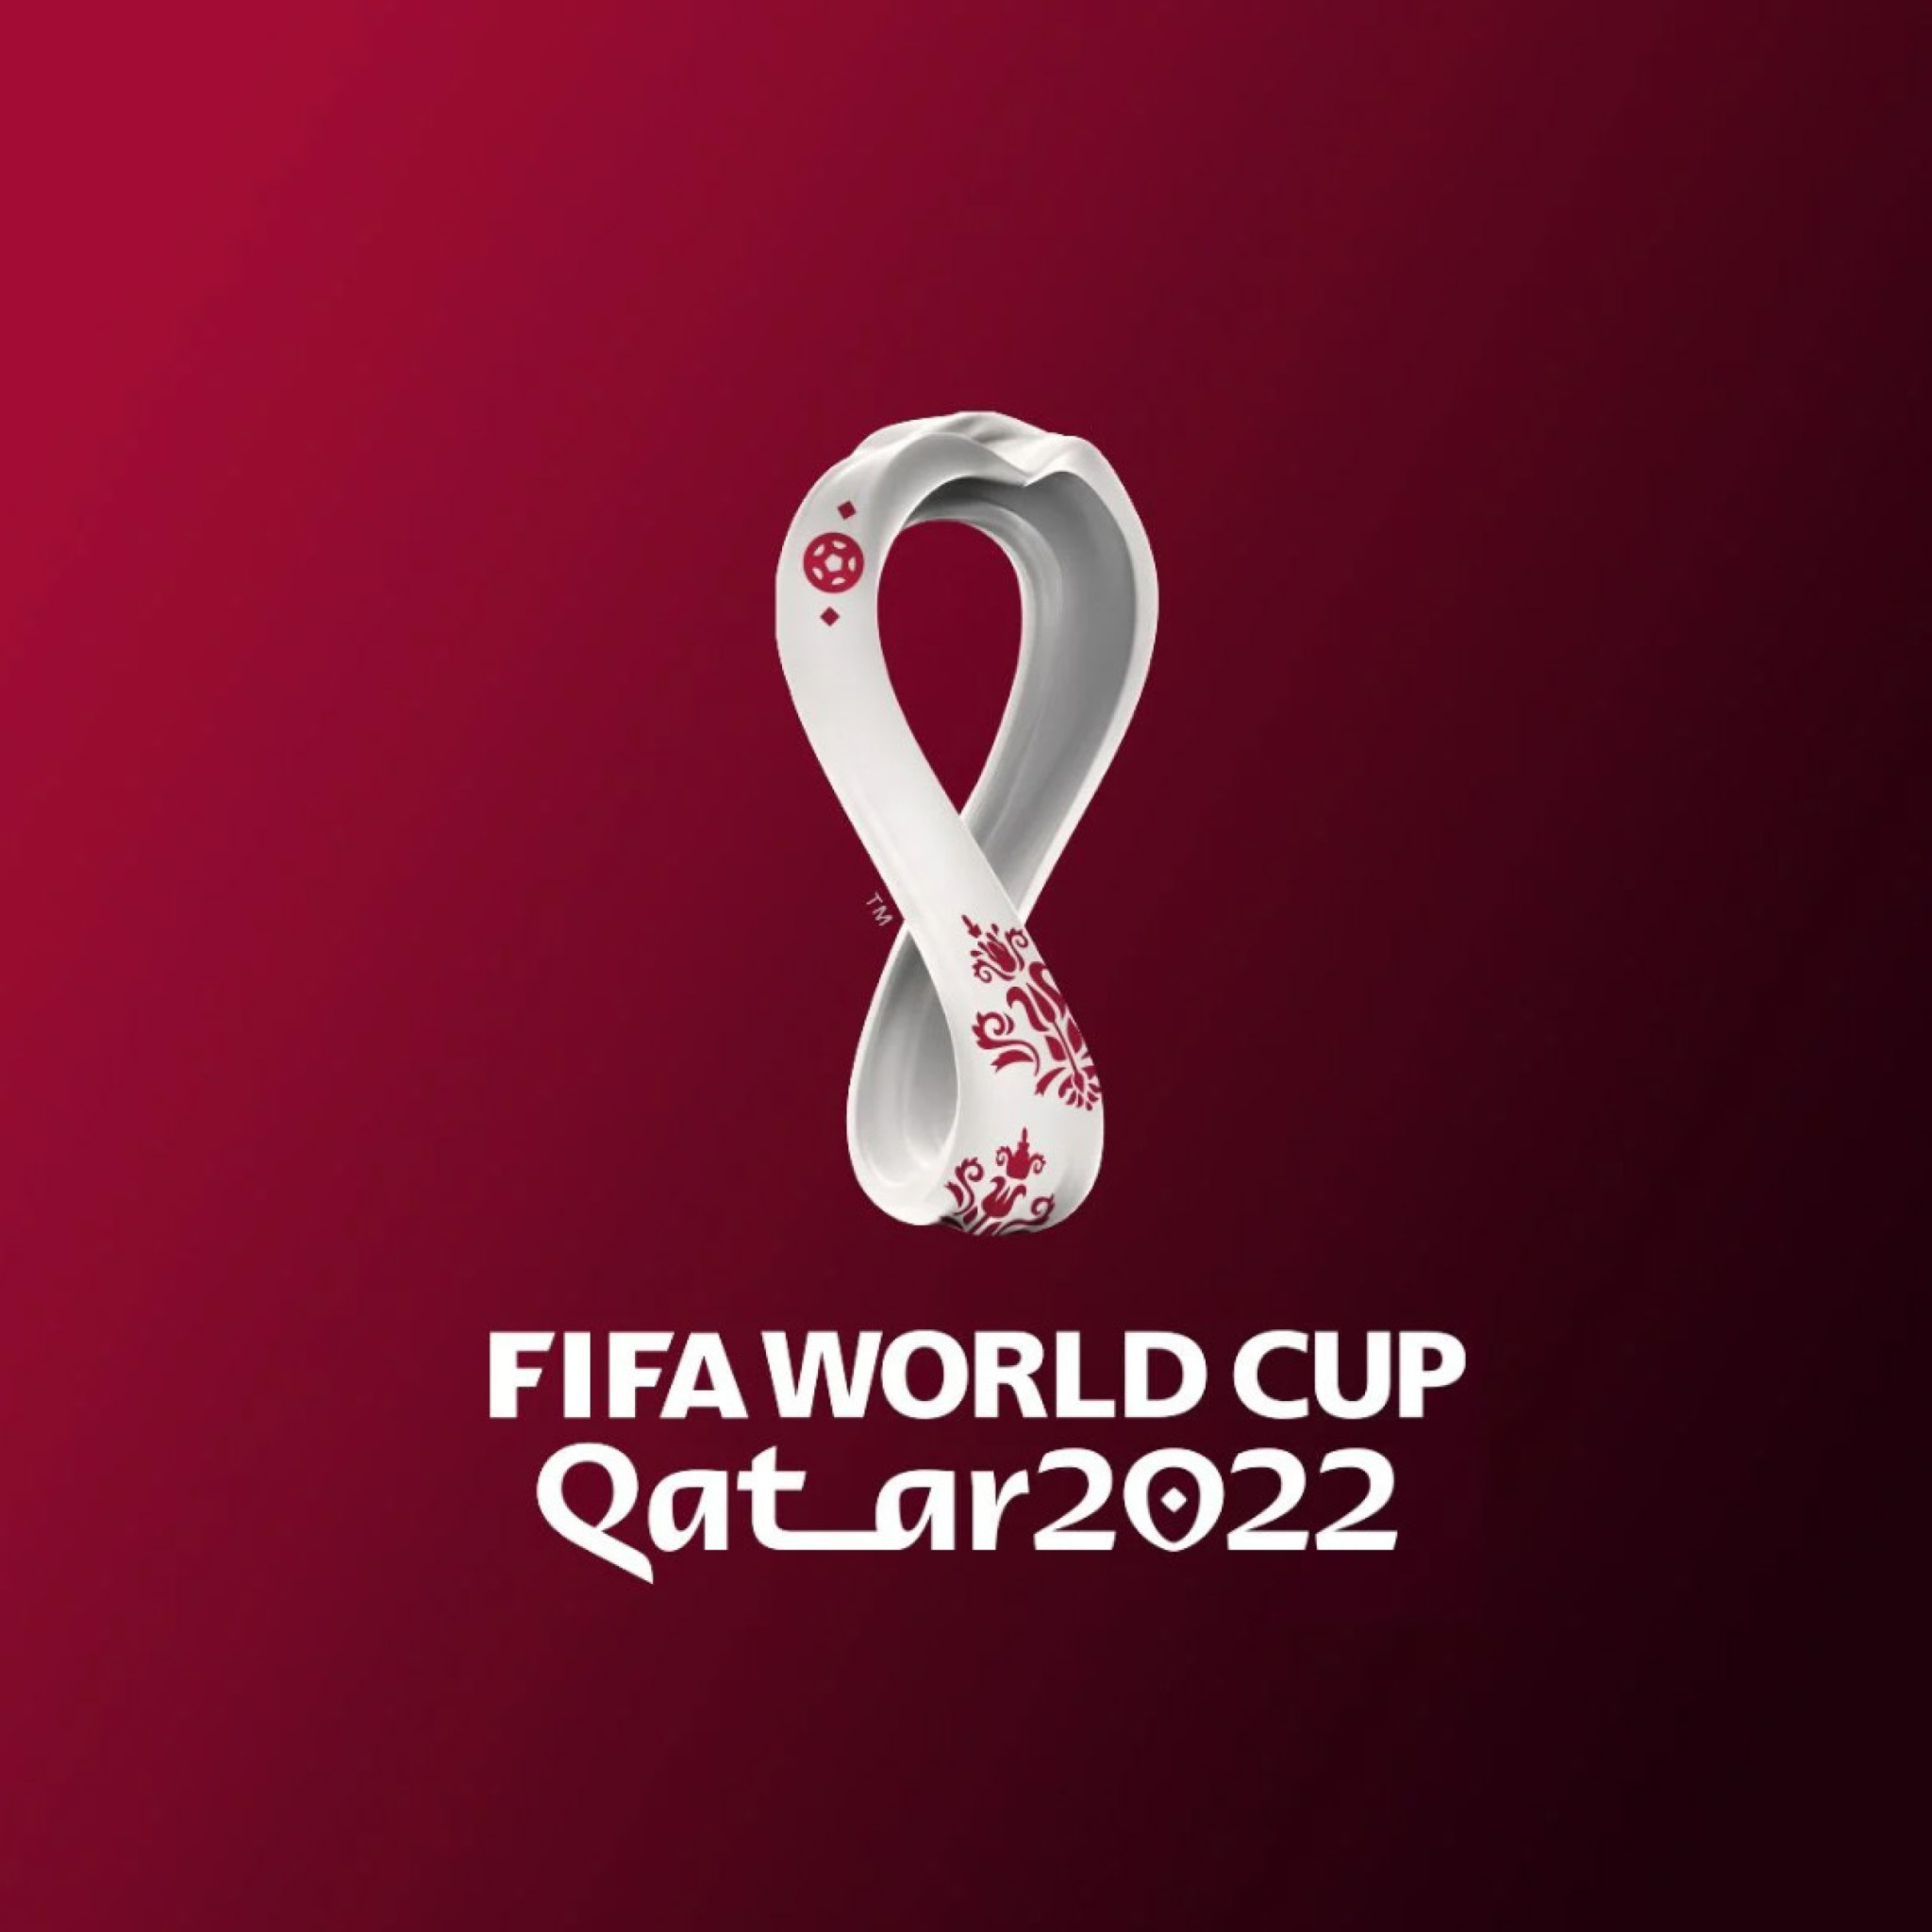 Das World Cup Qatar 2022 Wallpaper 2048x2048